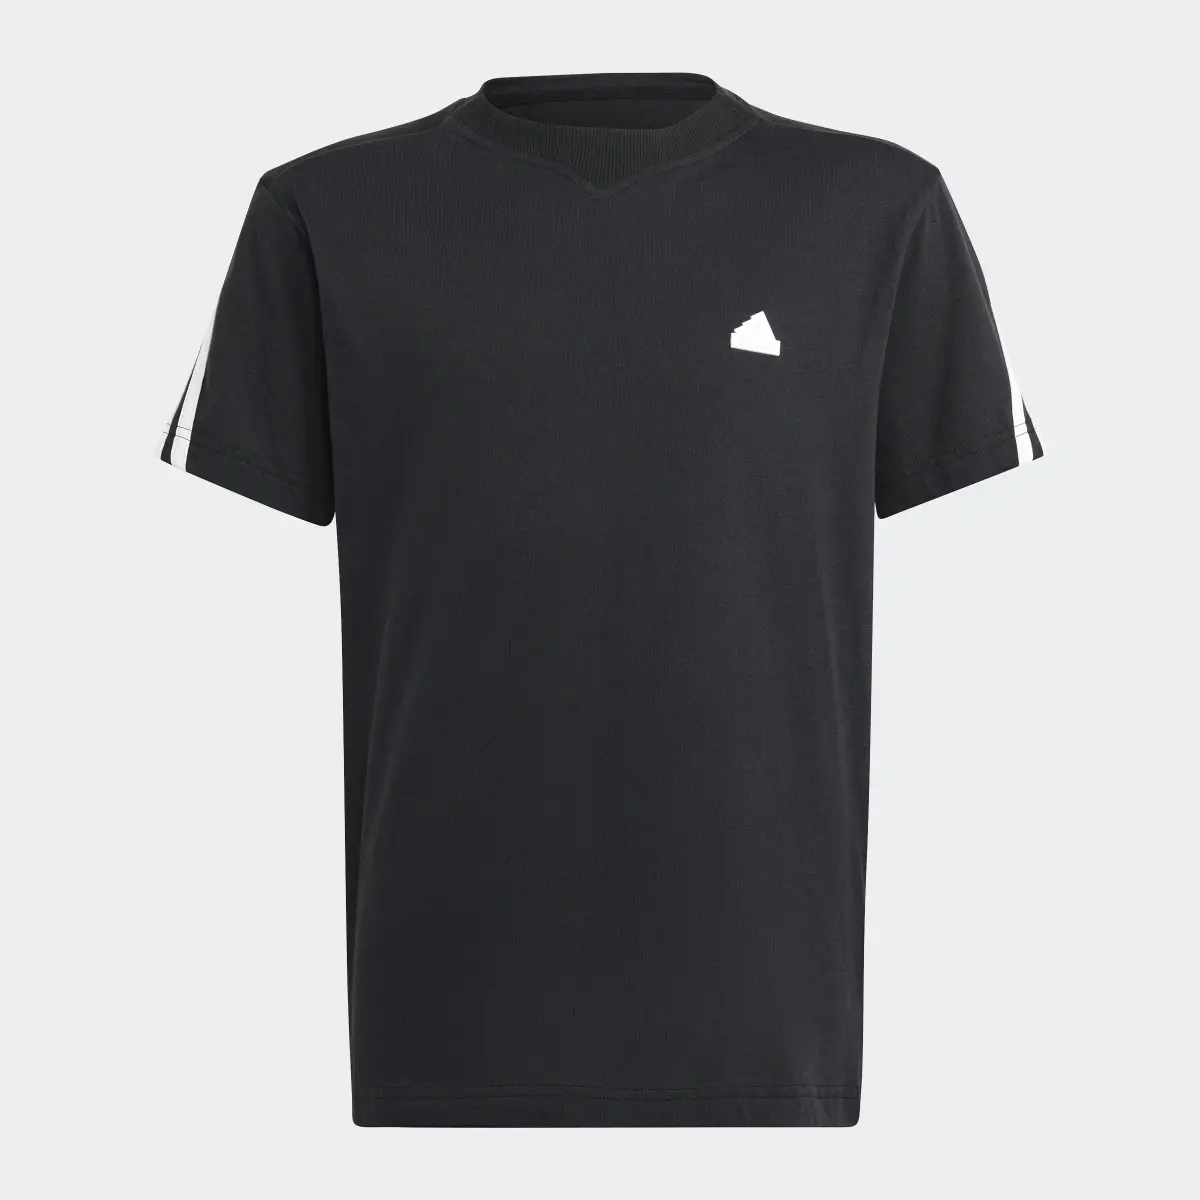 Adidas T-shirt 3-Stripes Future Icons. 3